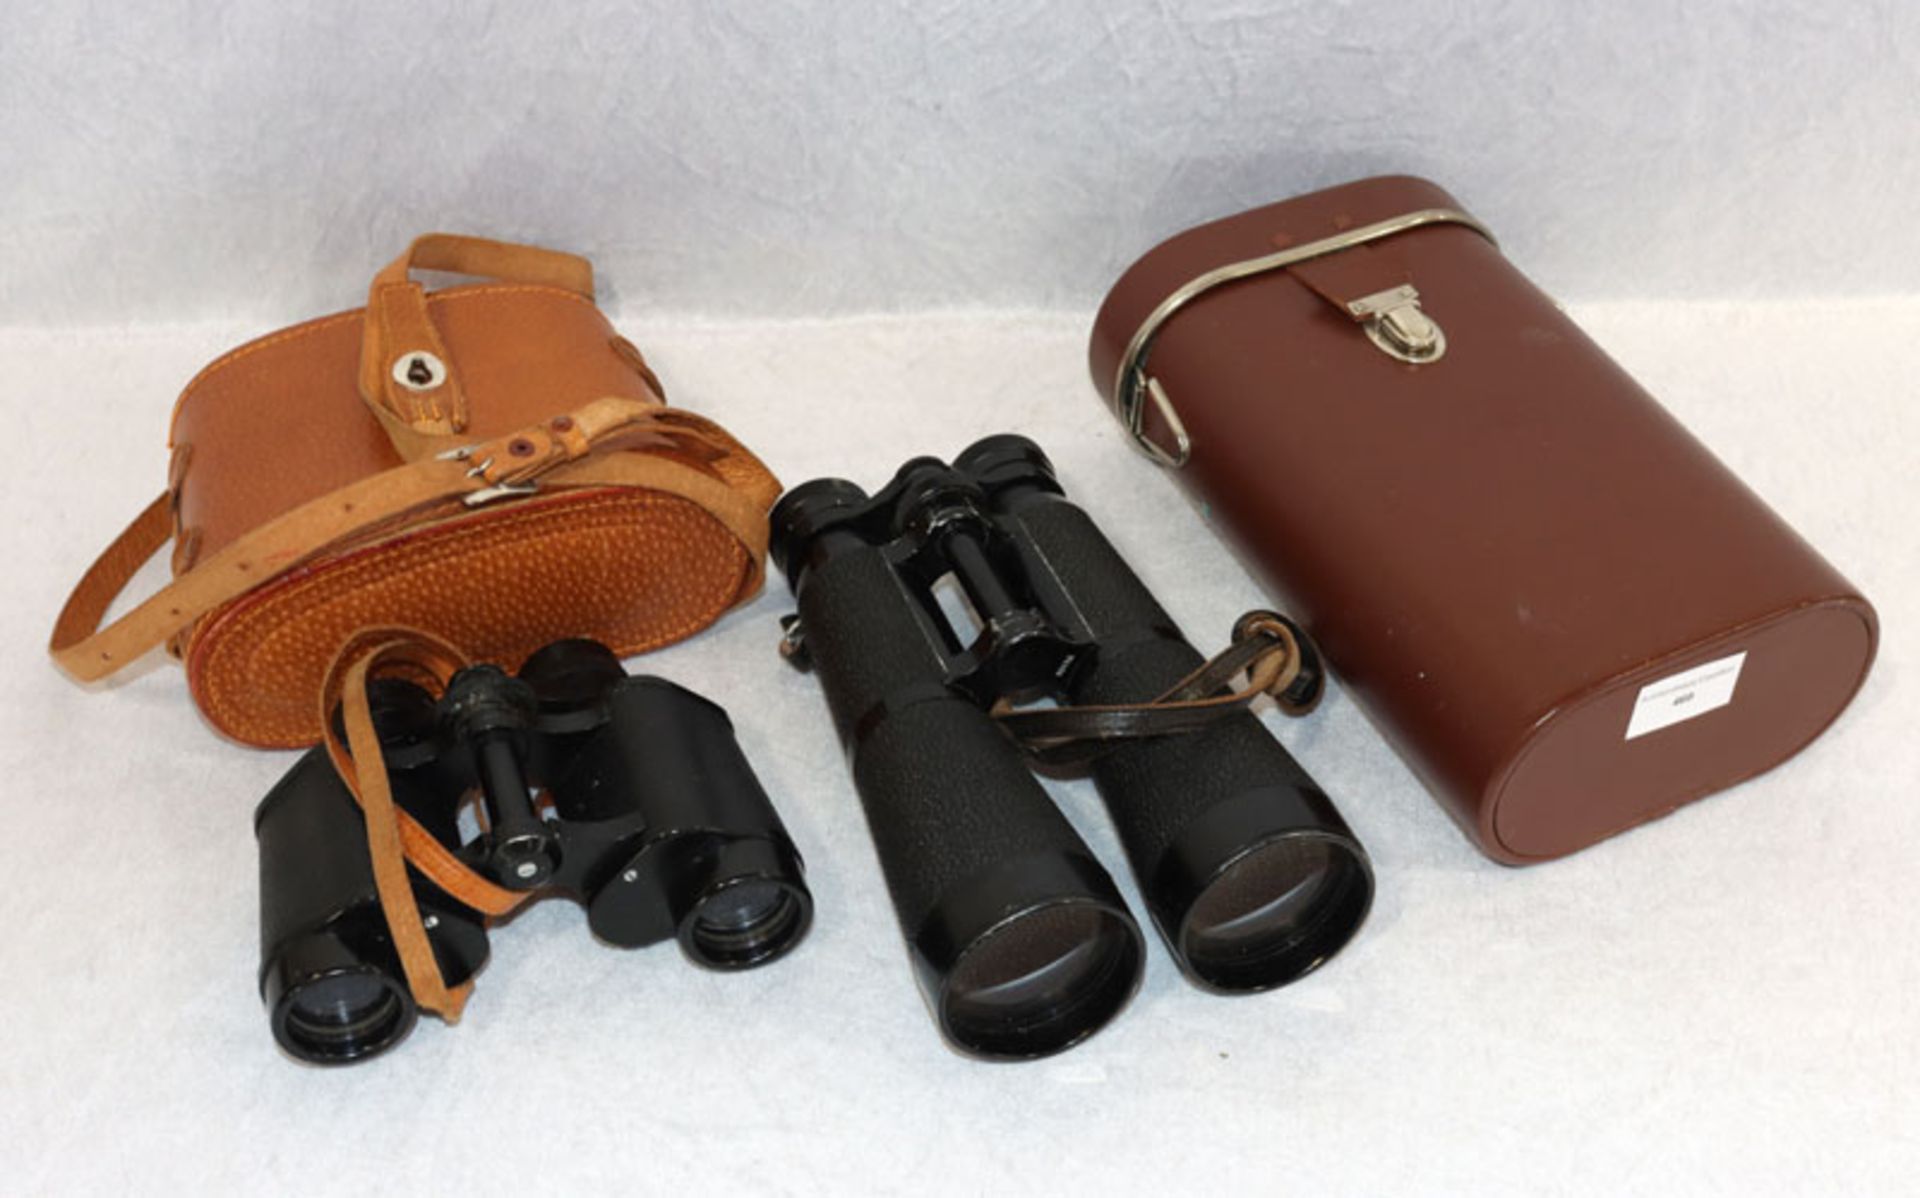 2 Ferngläser mit Tasche, Hensoldt, Wetzlar 8x56, und Scanex 8x30, Gebrauchsspuren